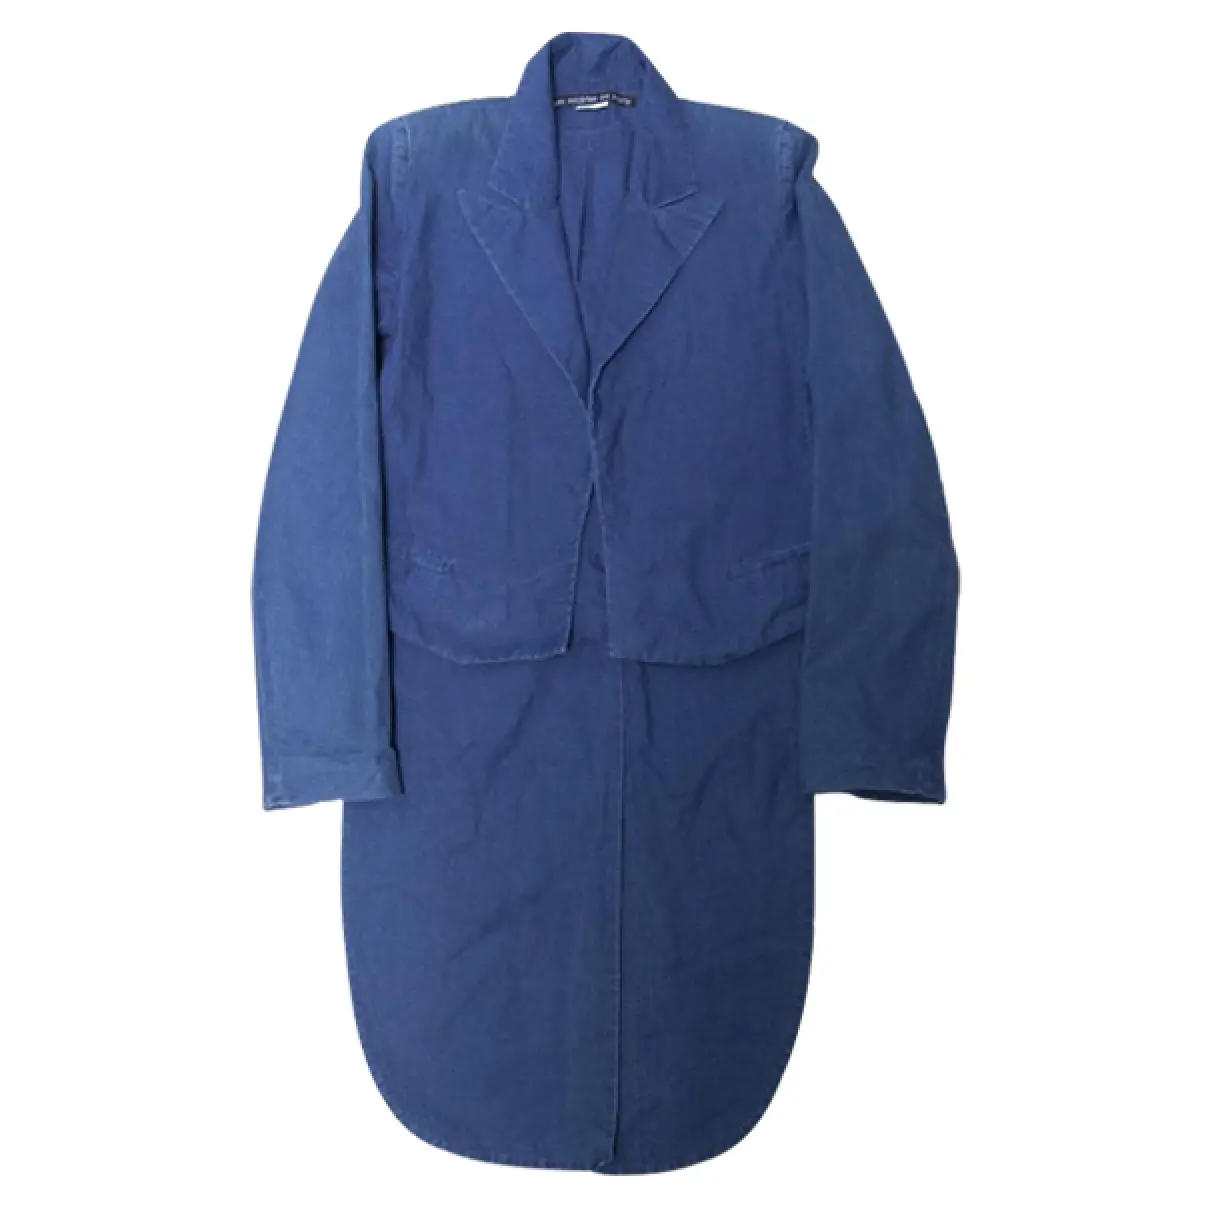 Blue Cotton Jacket Les Prairies De Paris